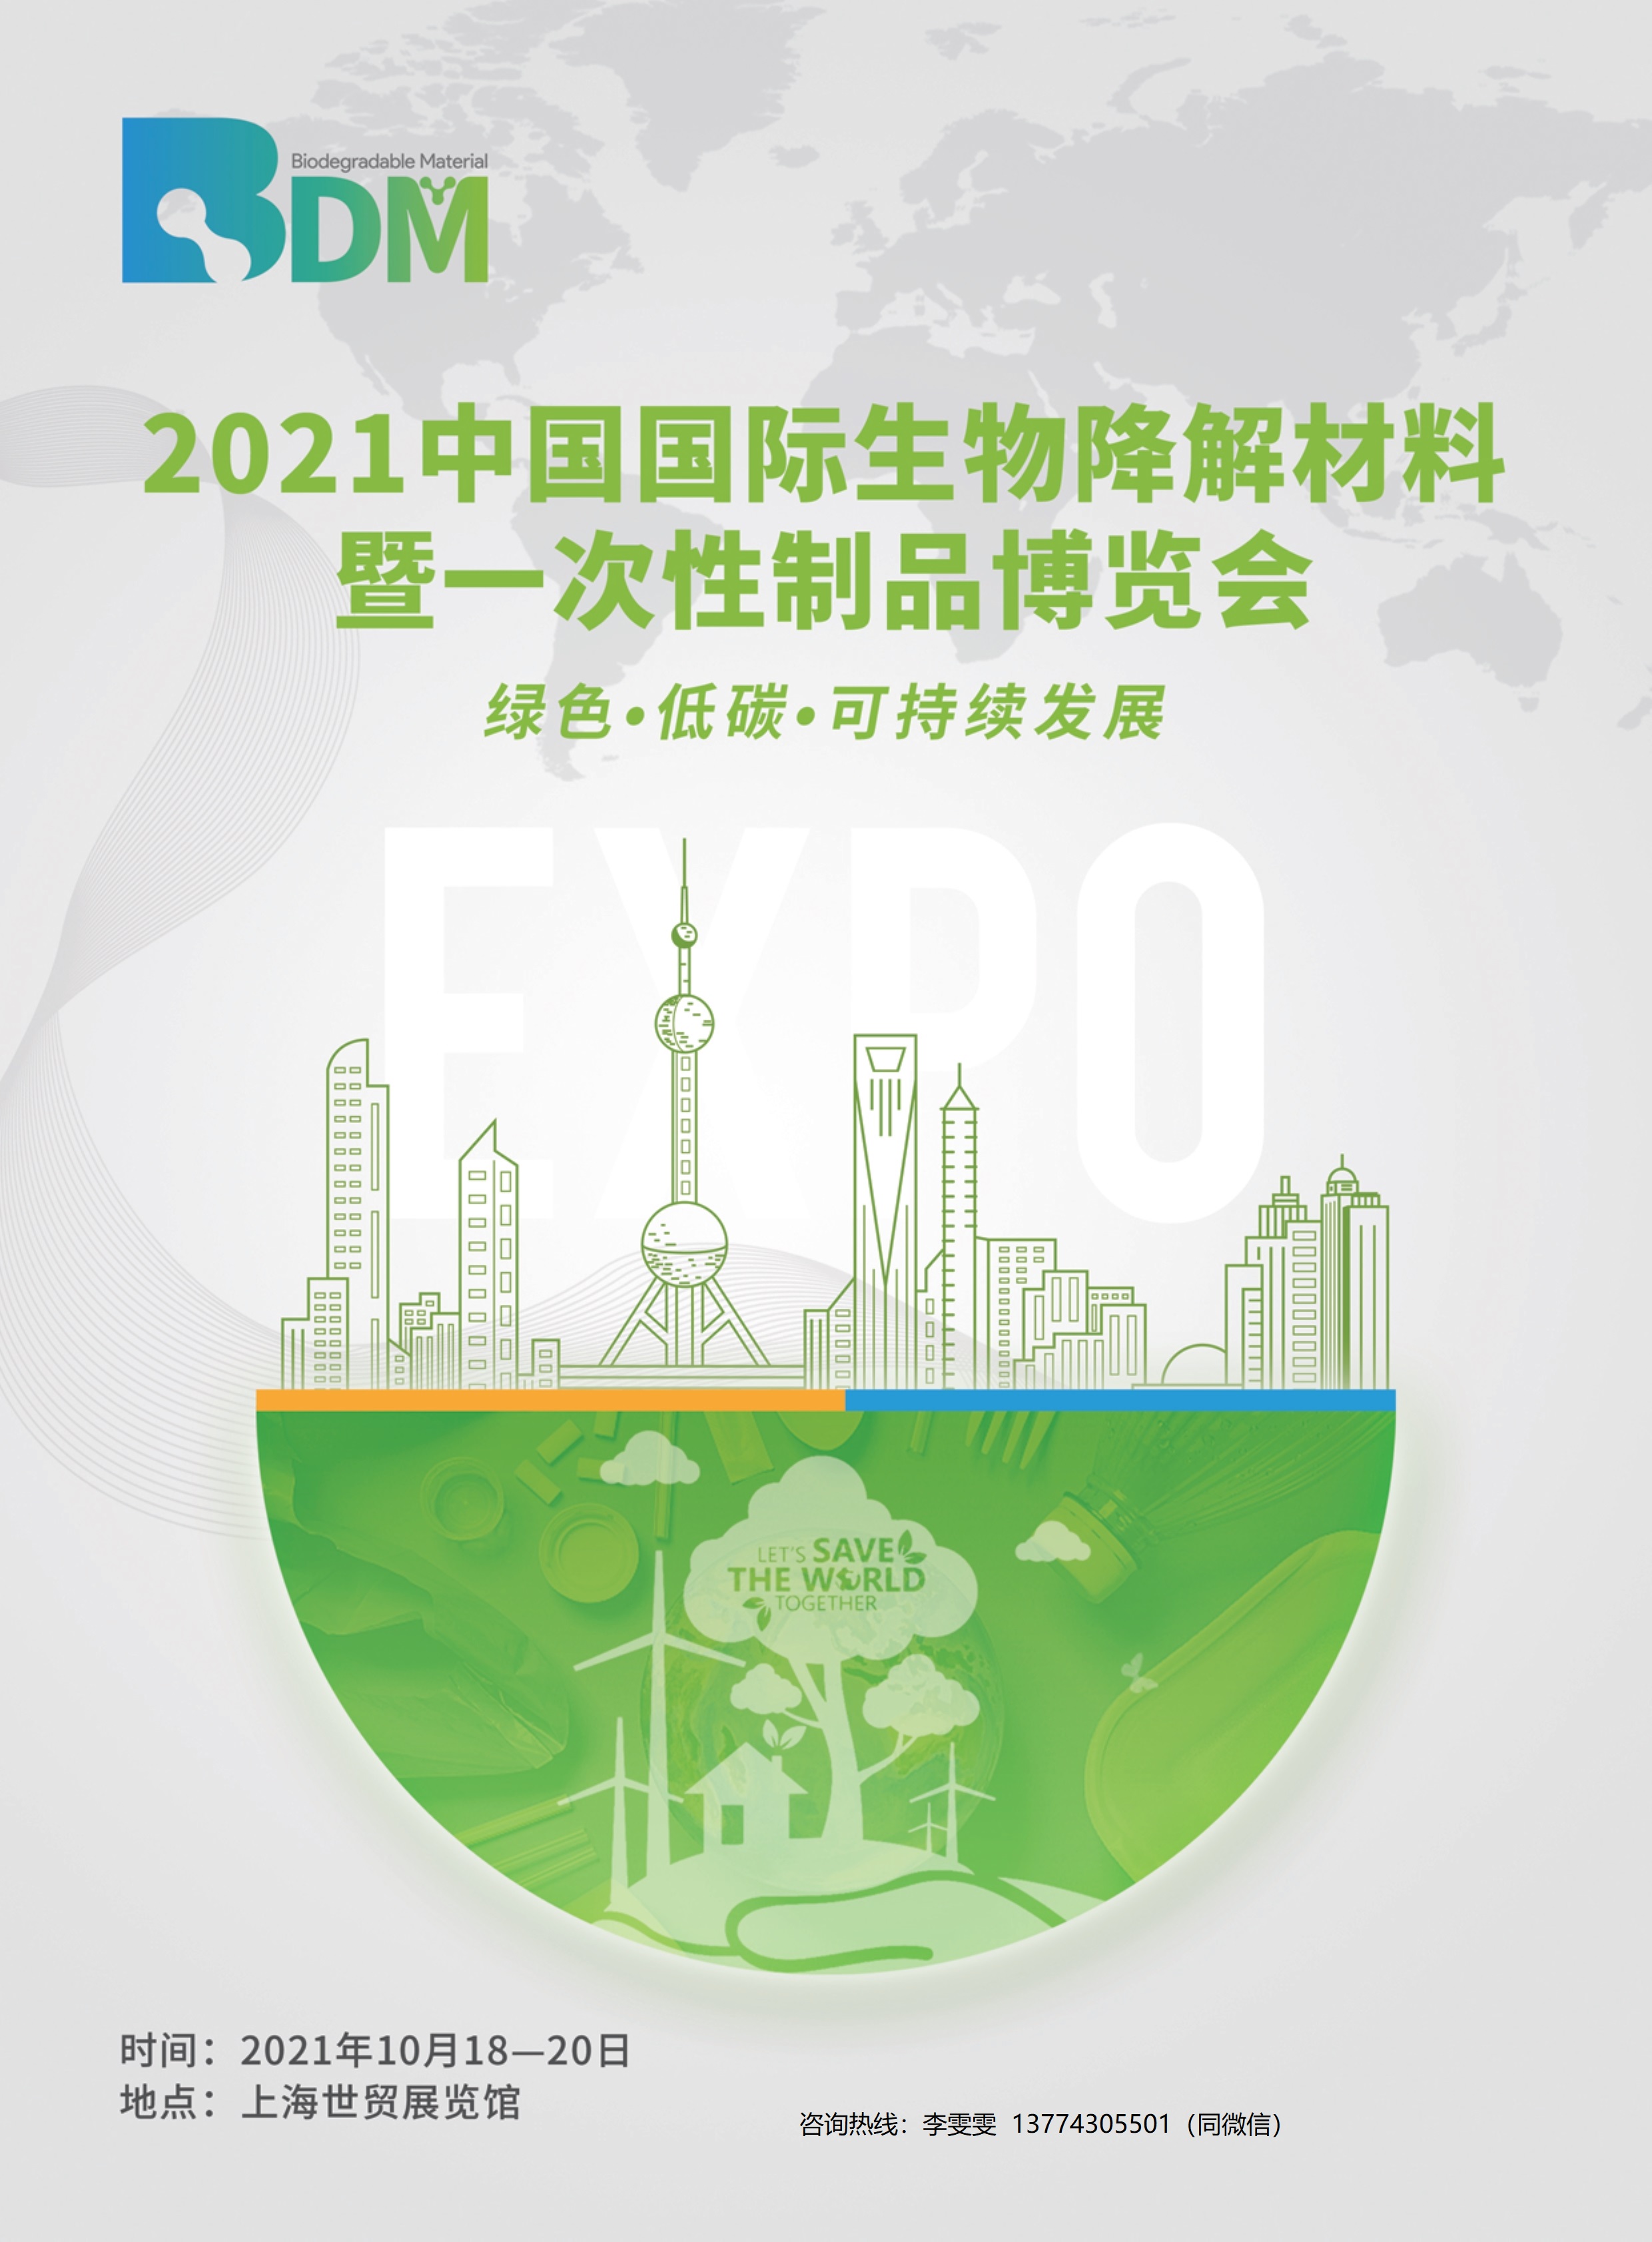 2022年上海生物降解材料博览会